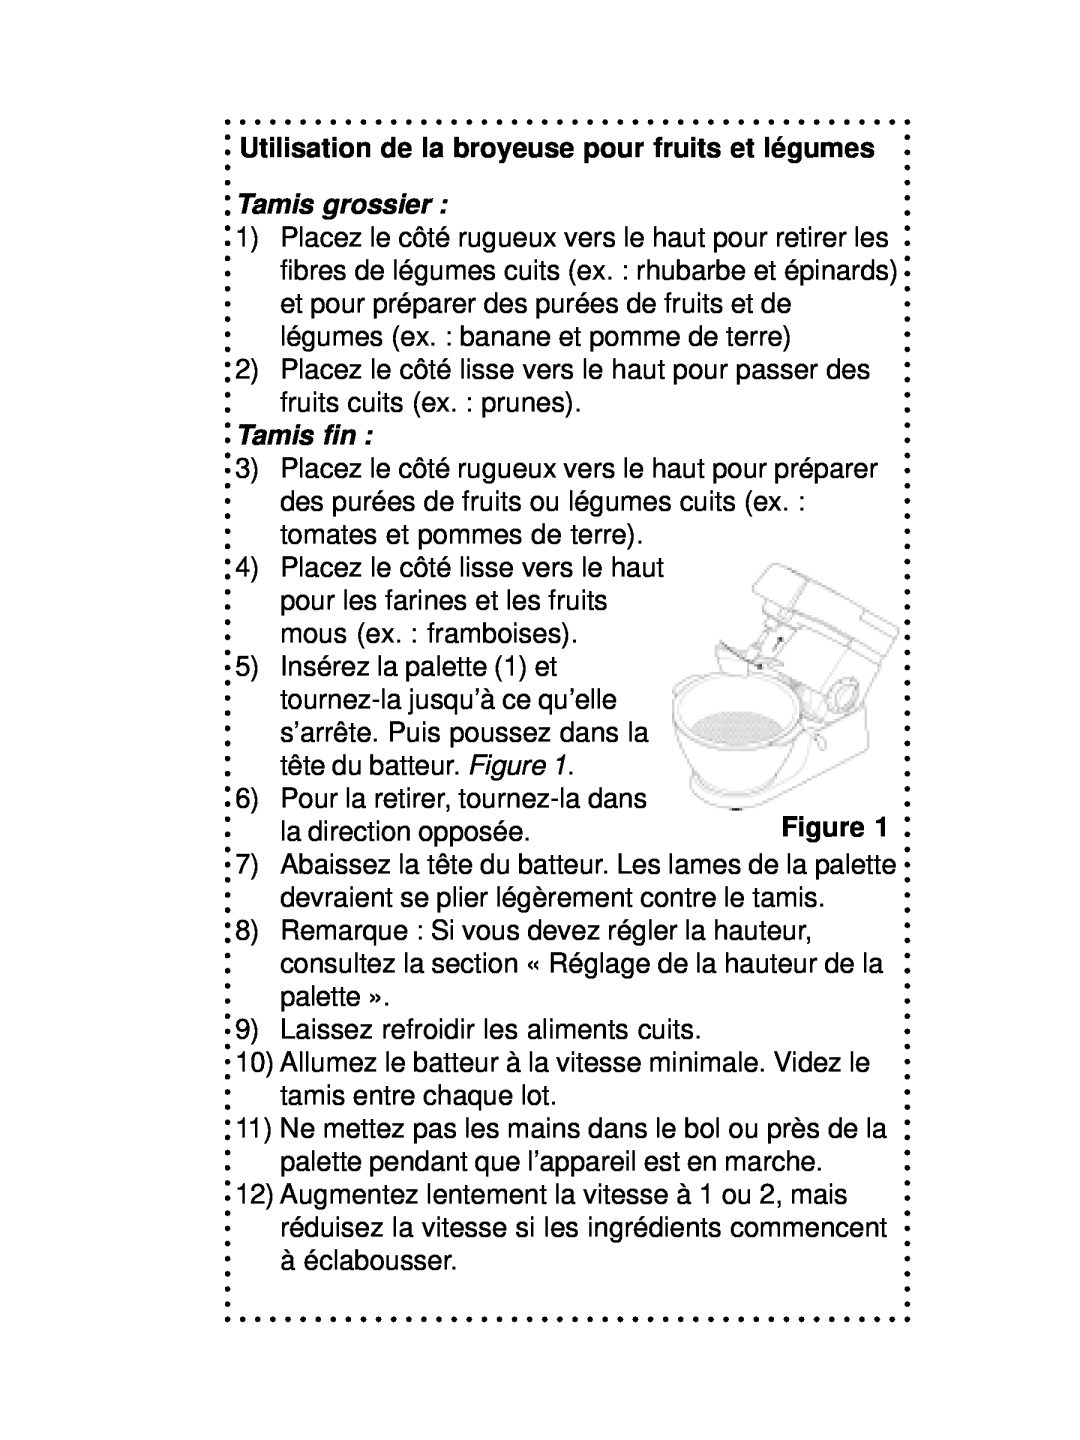 DeLonghi DSM700, DSM800 instruction manual Utilisation de la broyeuse pour fruits et légumes, Tamis grossier, Tamis fin 